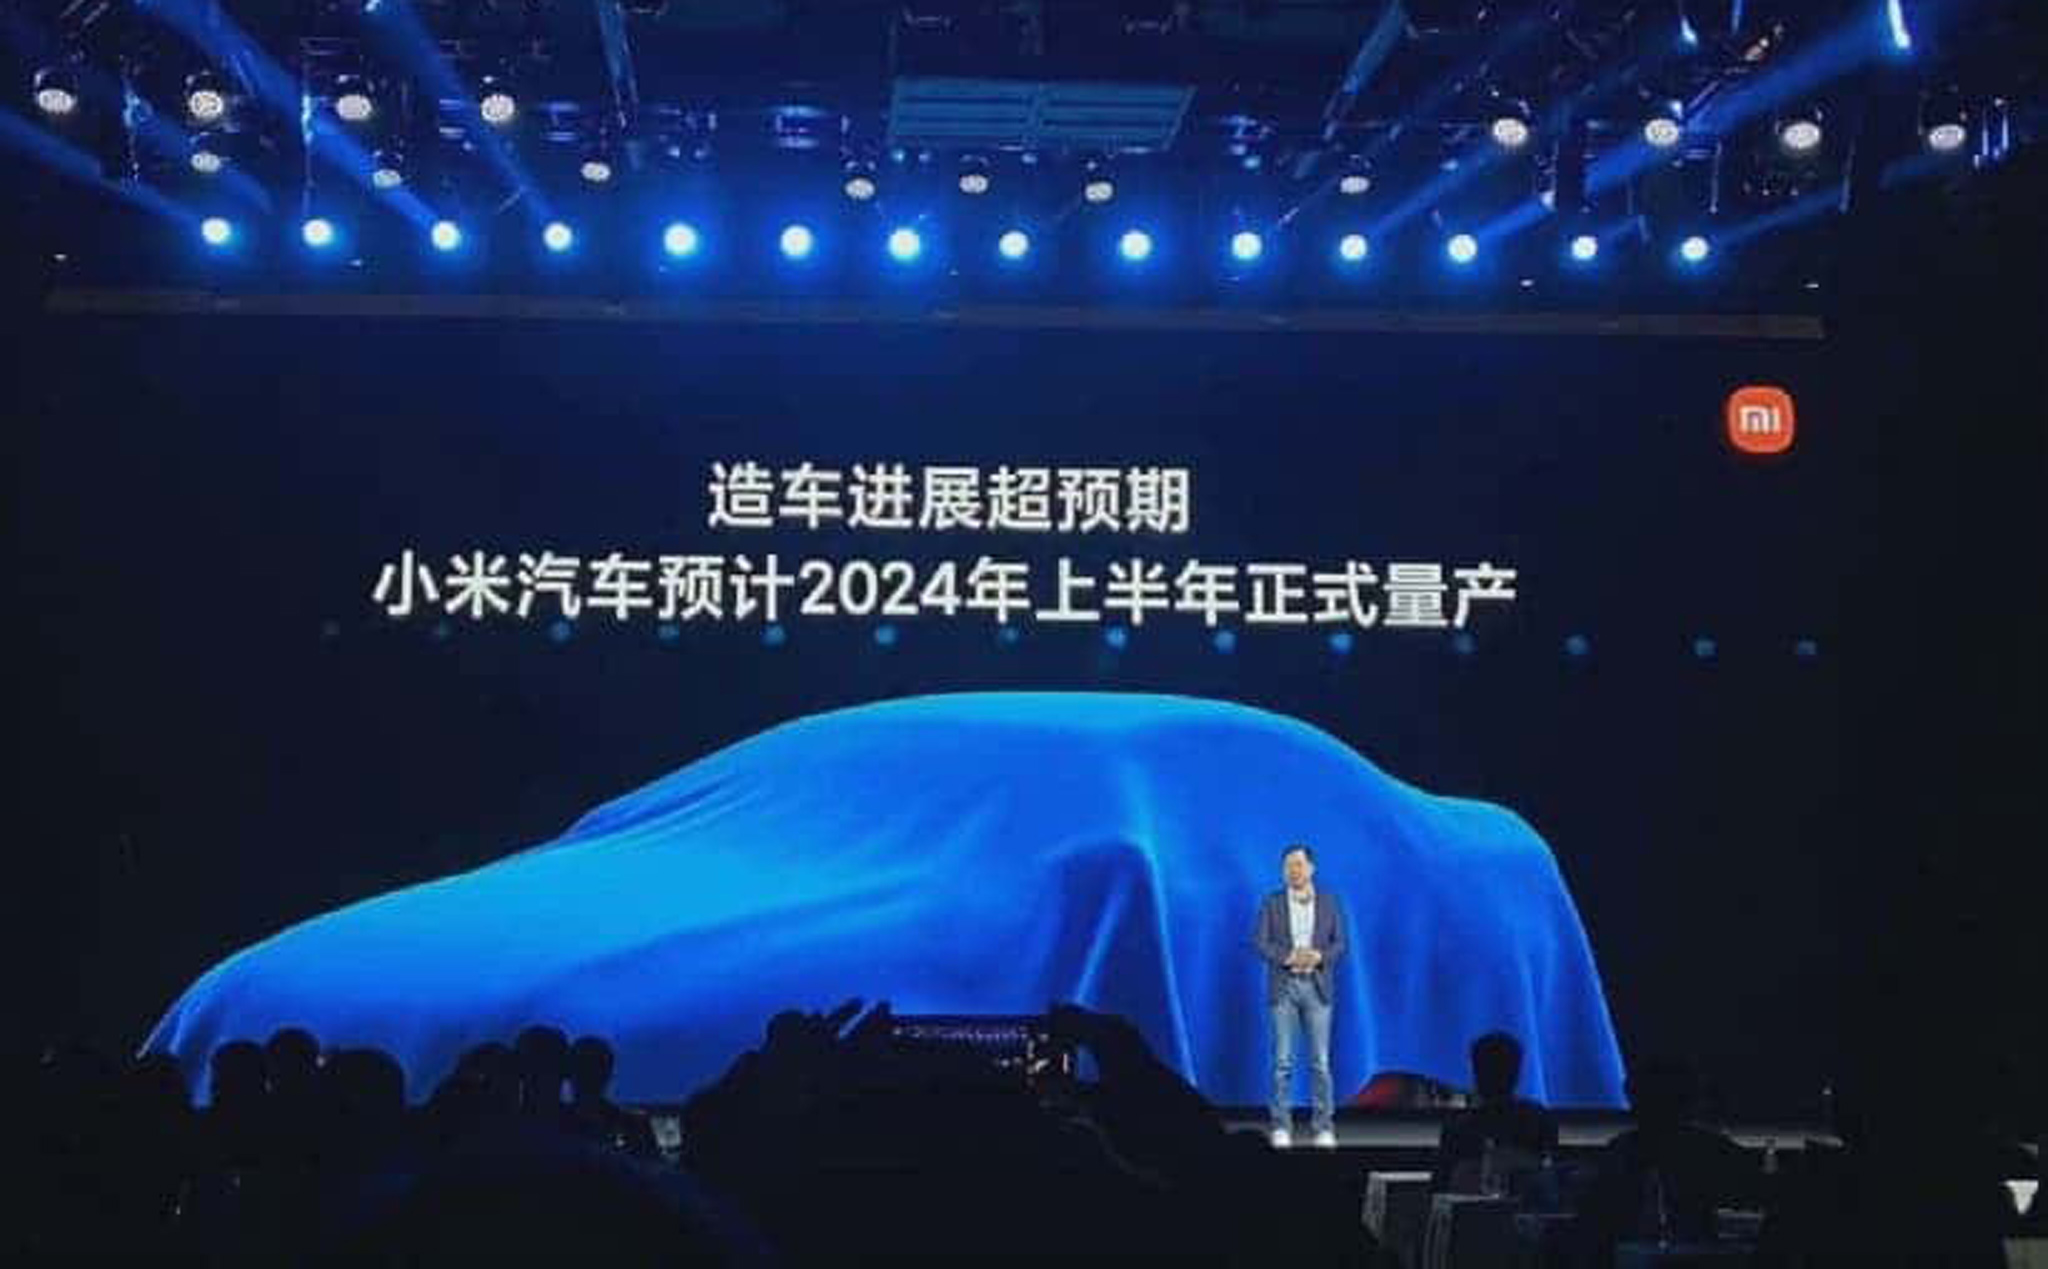 Xiaomi thành lập công ty ô tô thứ 2 với vốn đăng ký 1 tỉ NDT